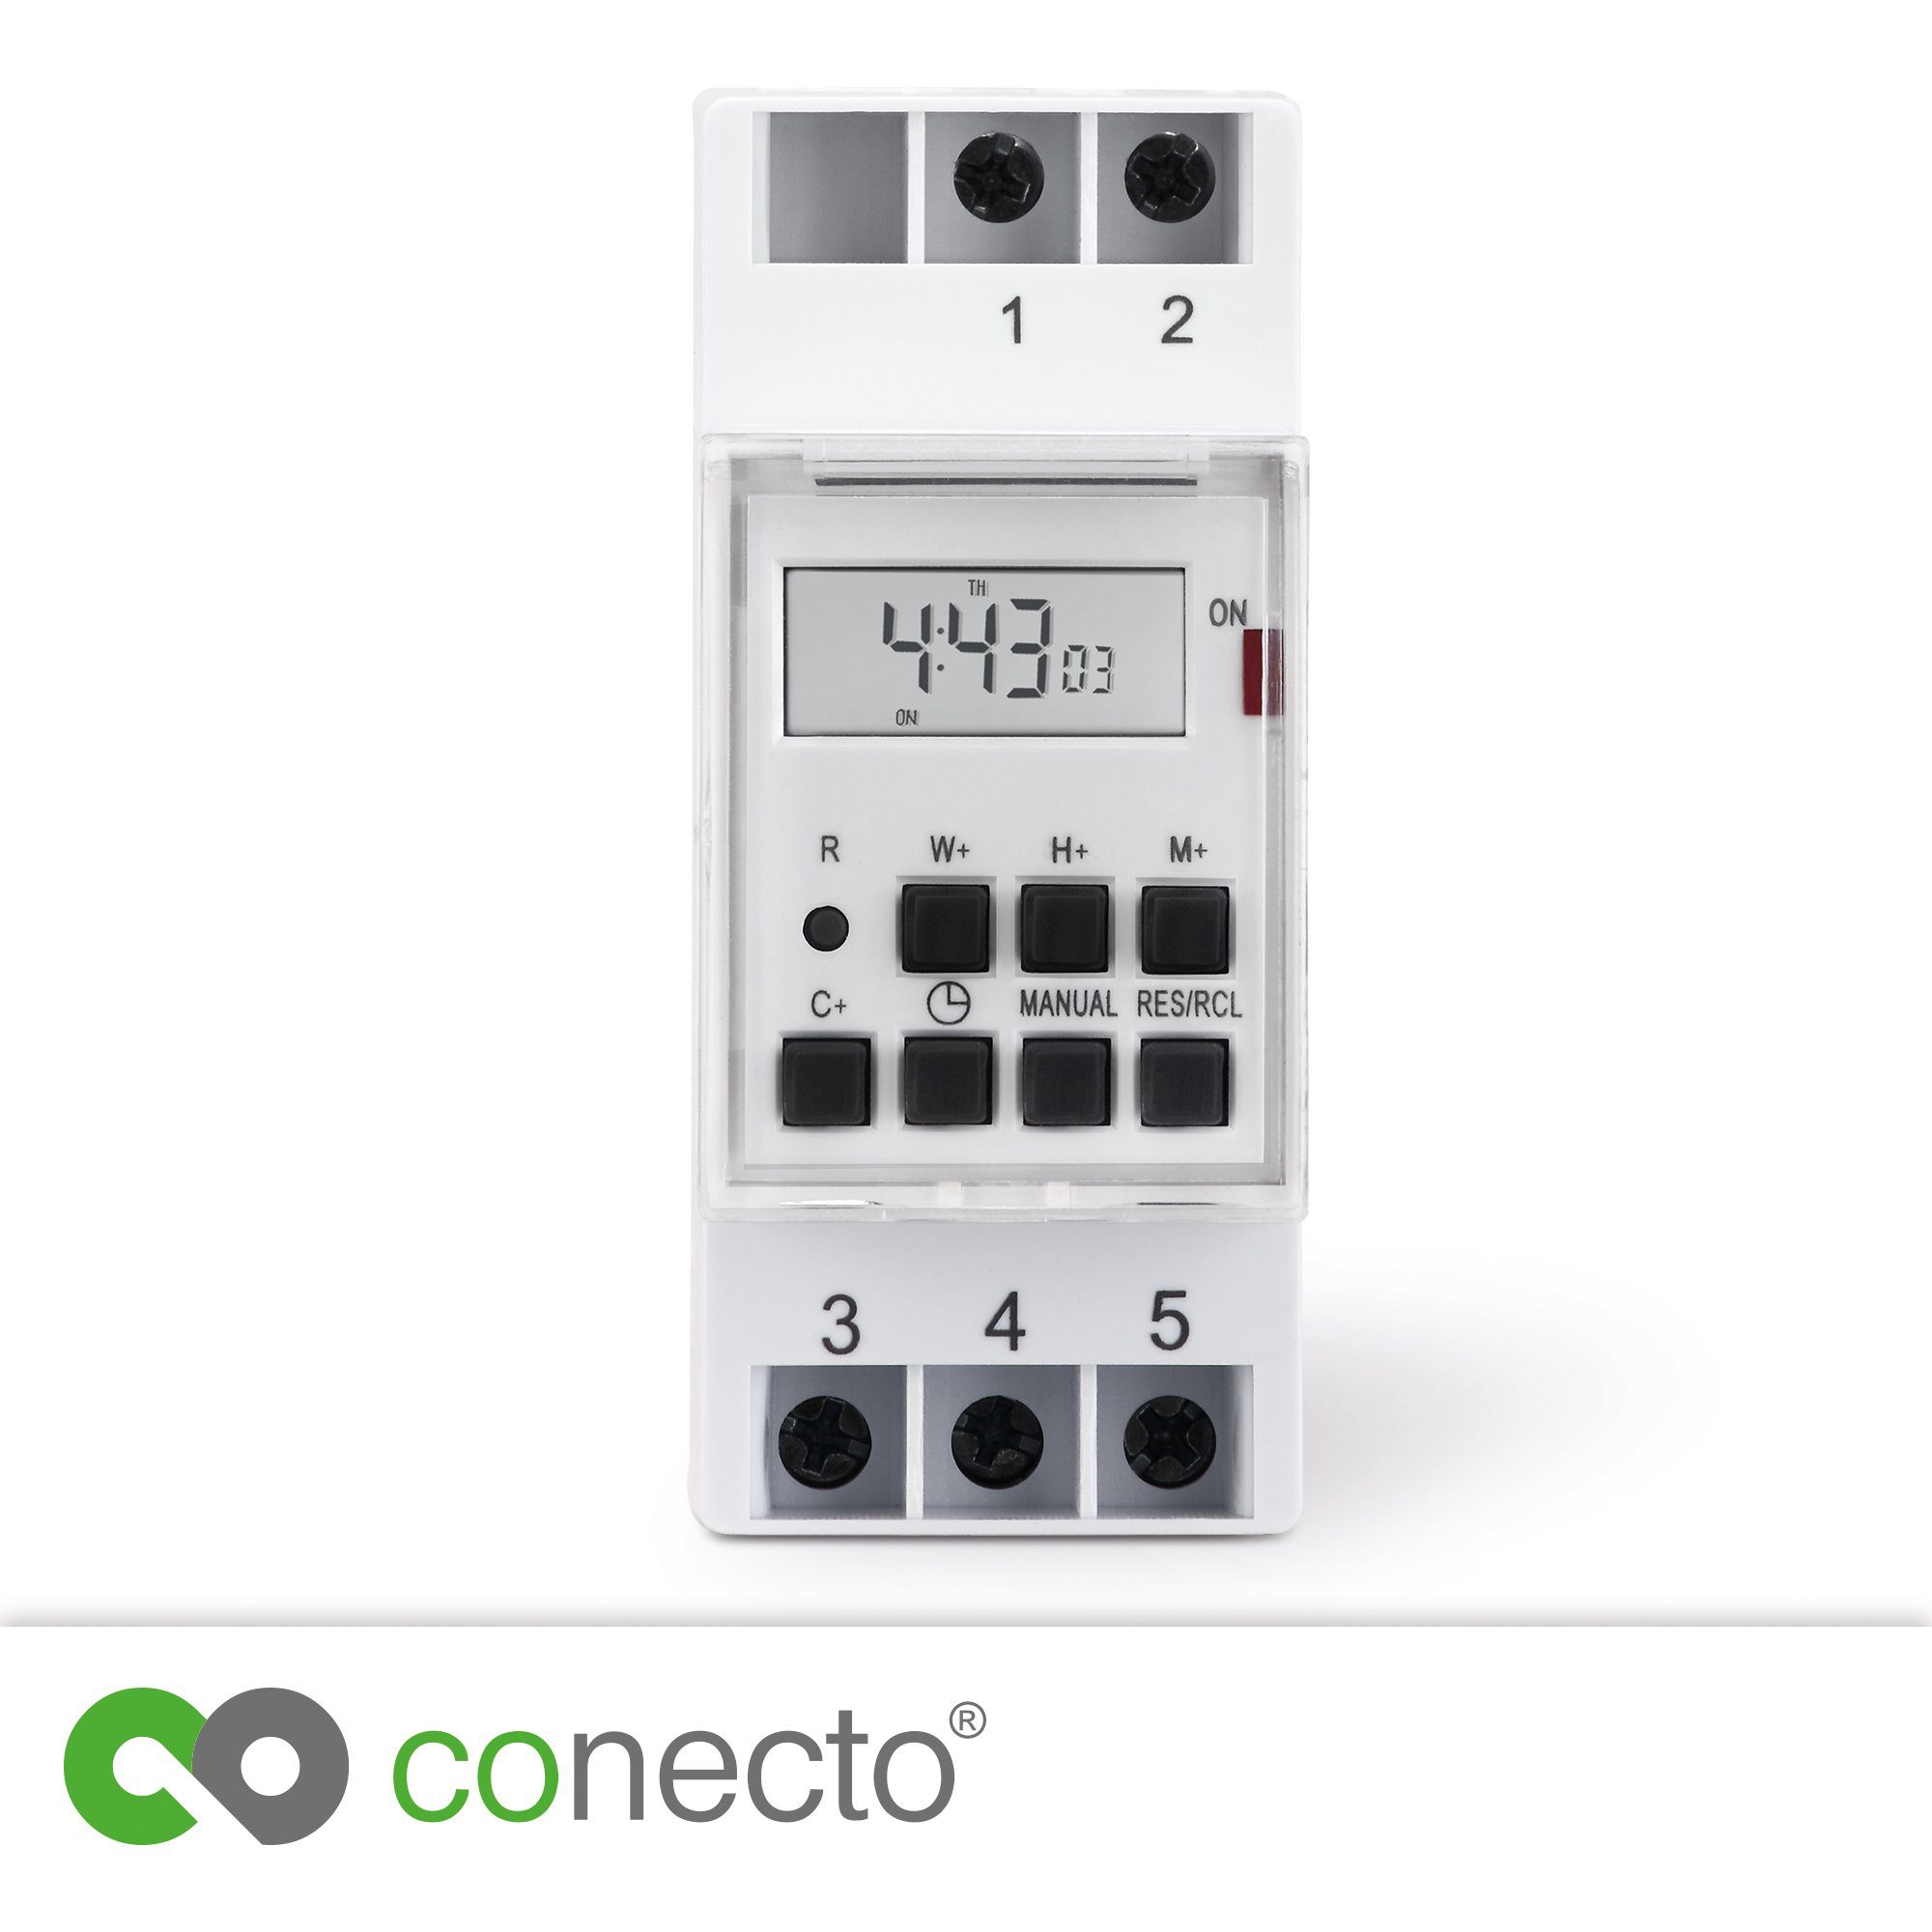 Digitale conecto IP20, conecto für Watt, Hutschienen, 3600 Zeitschaltuhr weiß Zeitschaltuhr